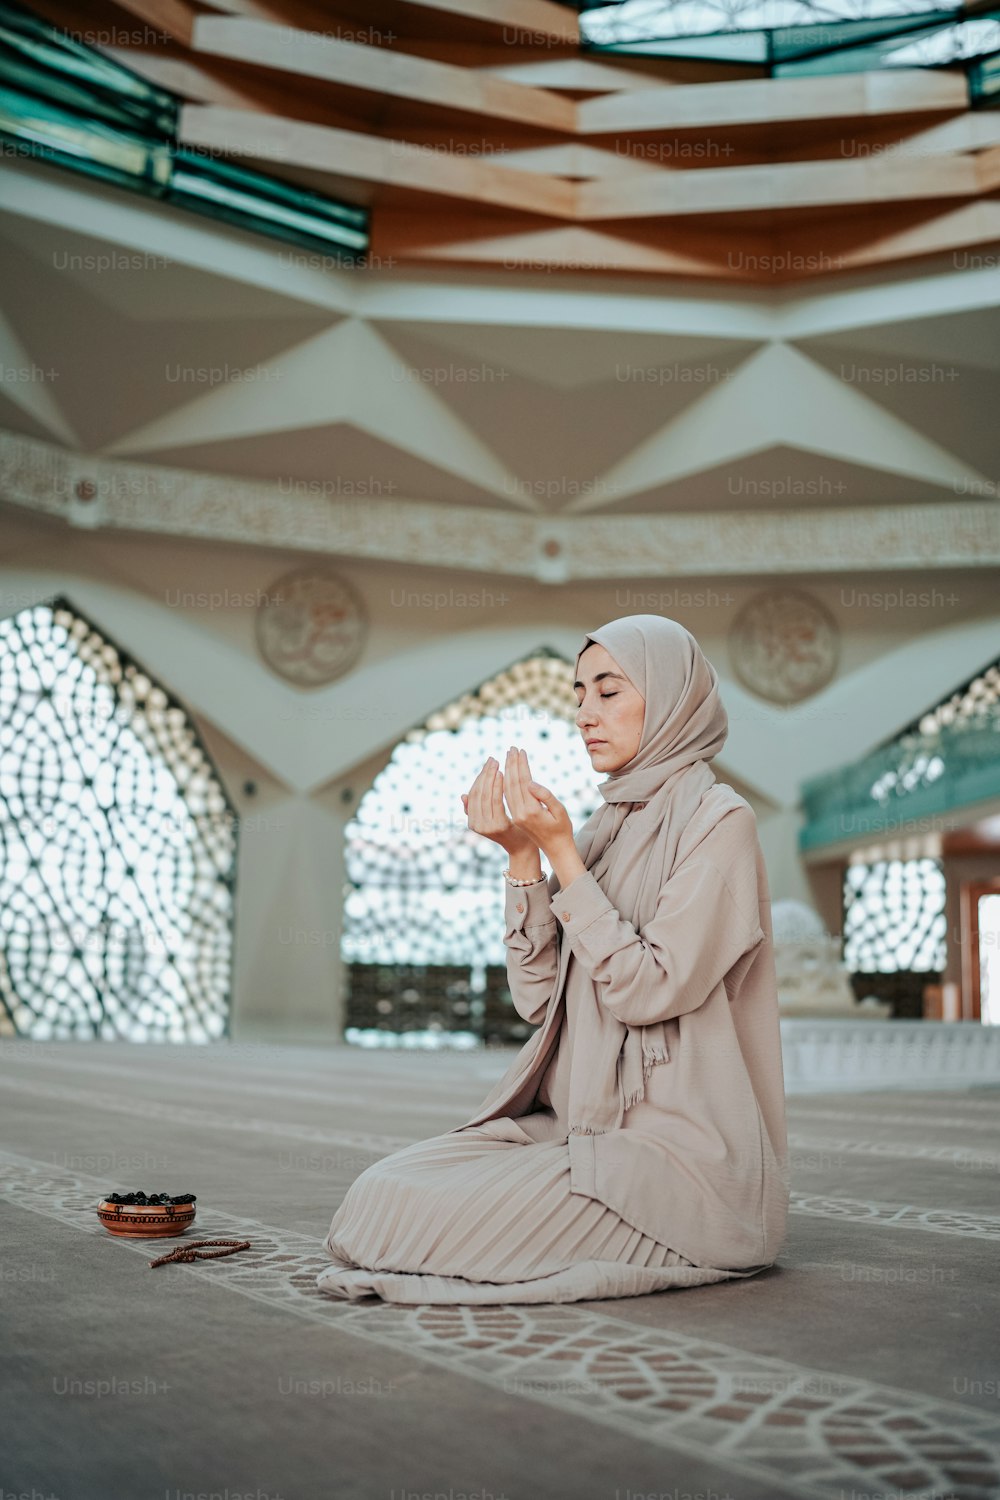 모스크에서 기도하는 바닥에 앉아 있는 여자